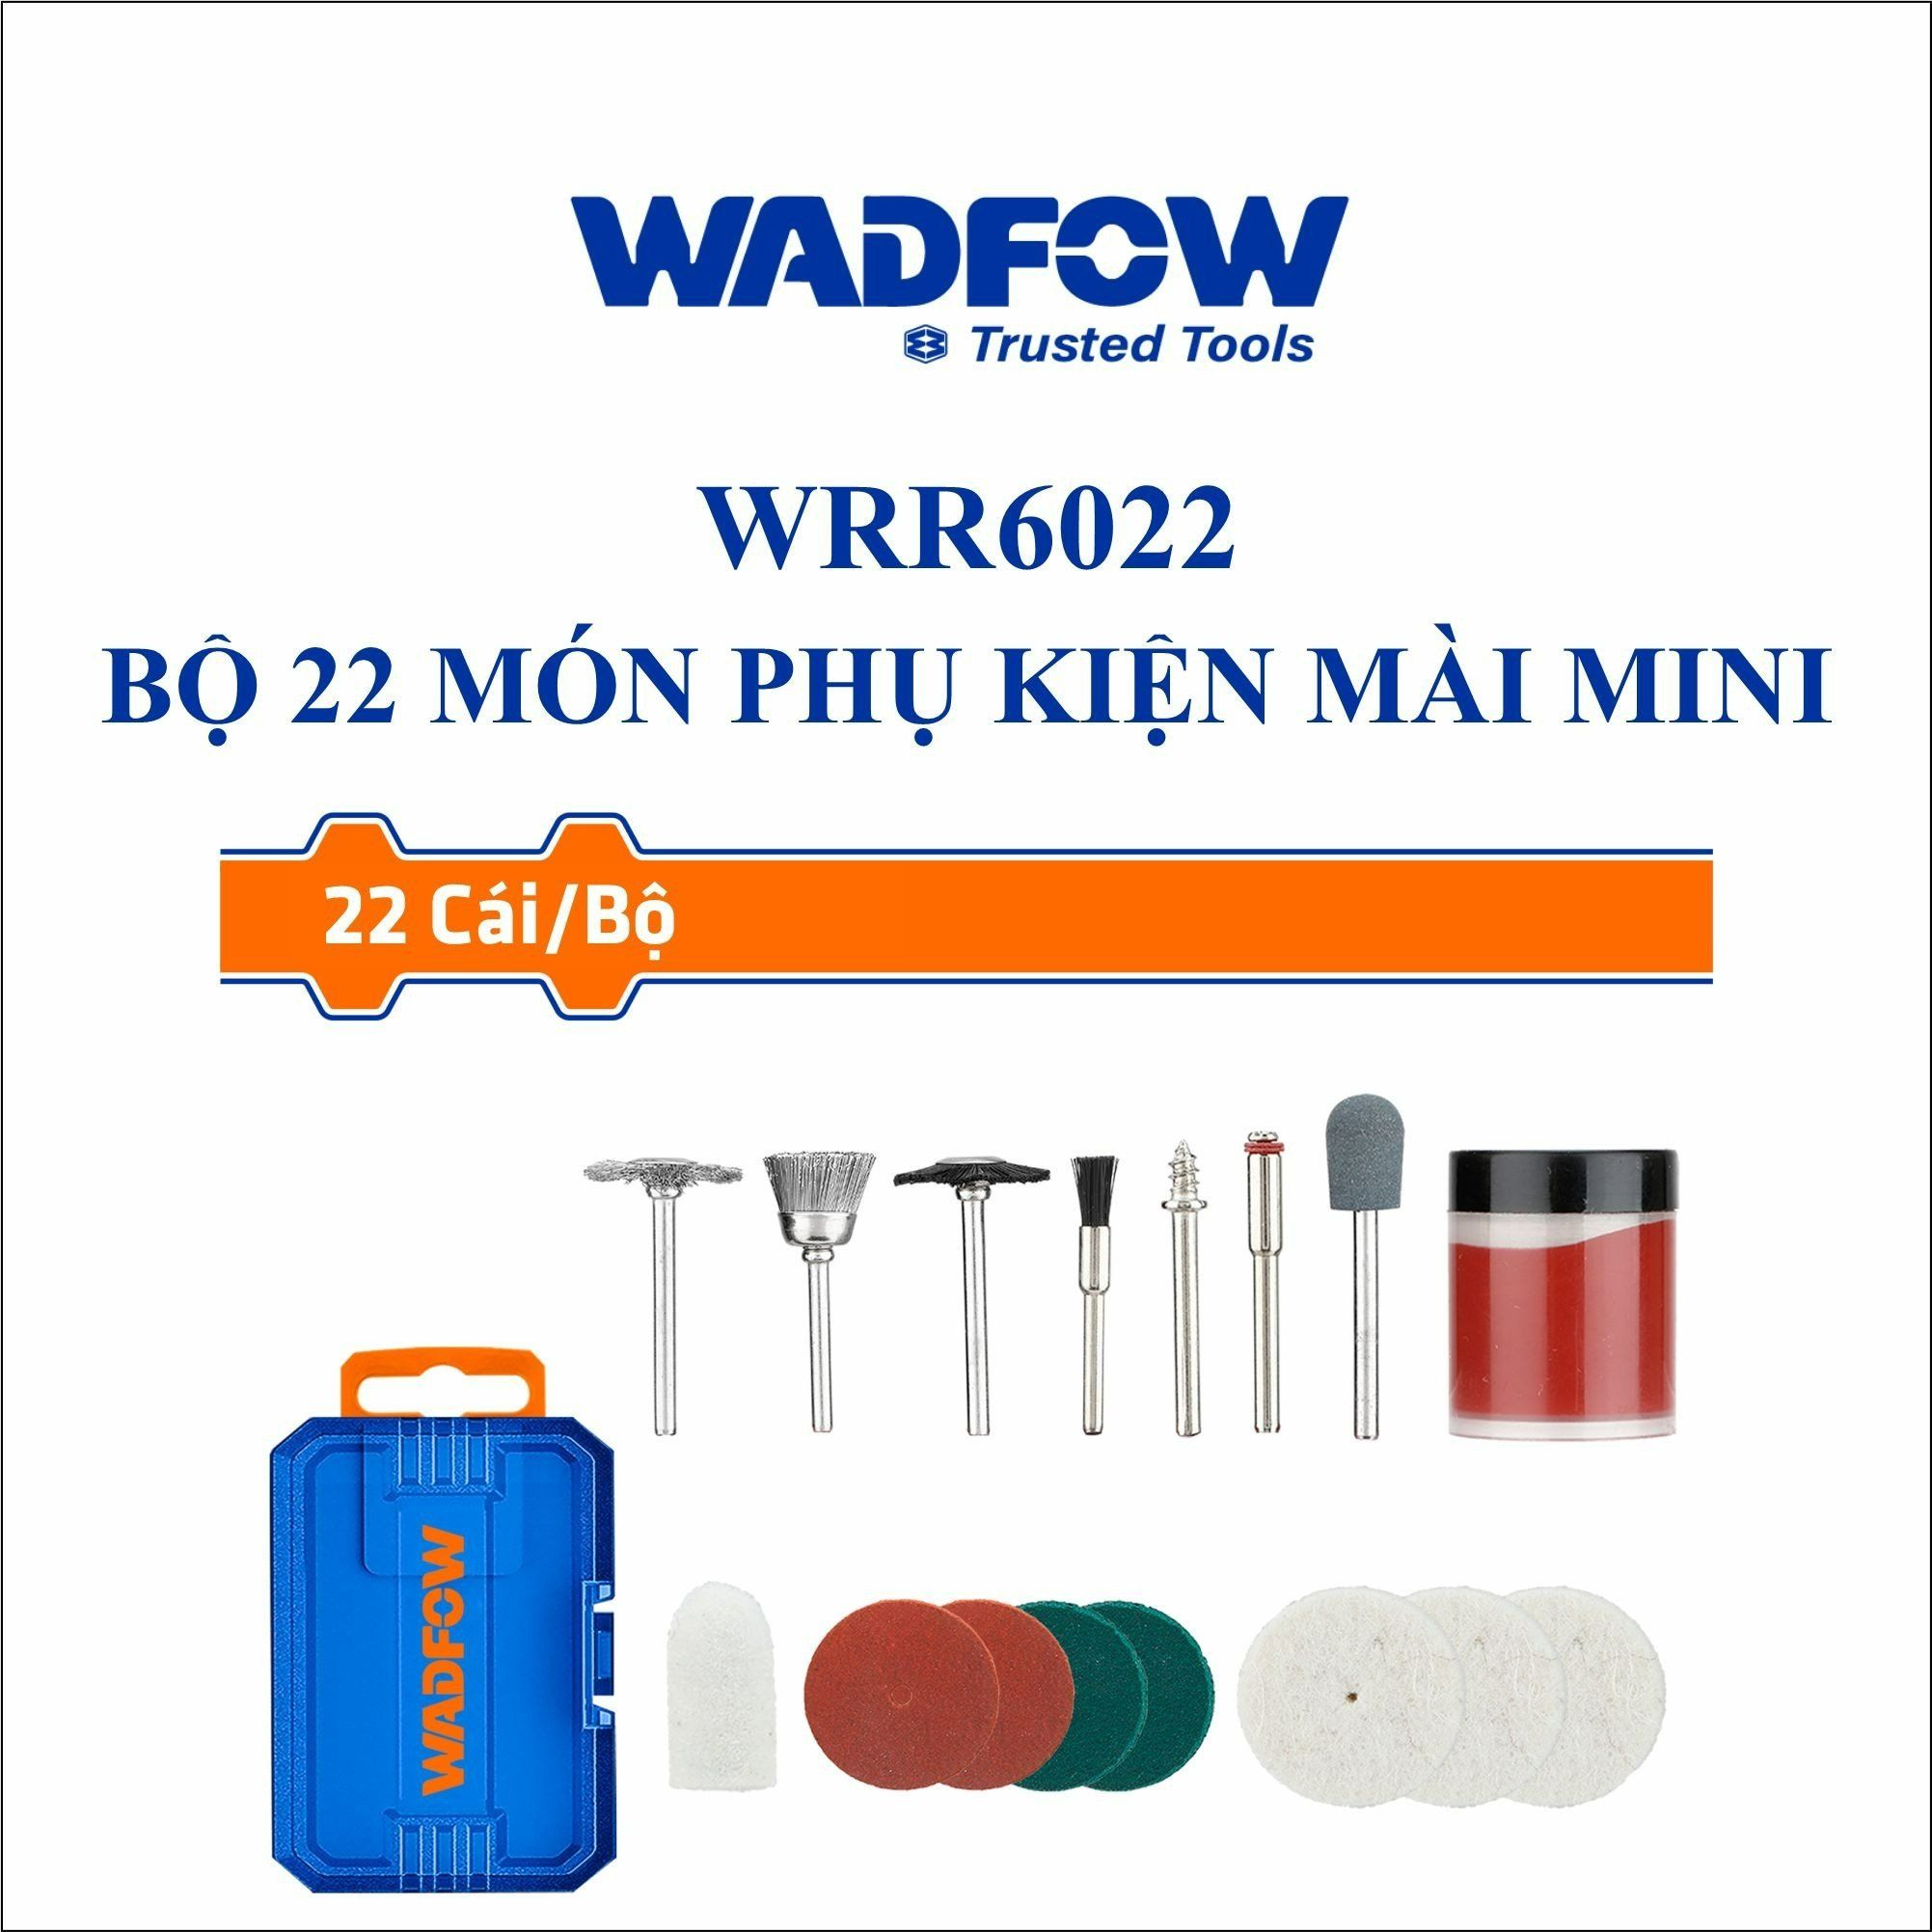  Bộ 22 món phụ kiện mài mini WADFOW WRR6022 